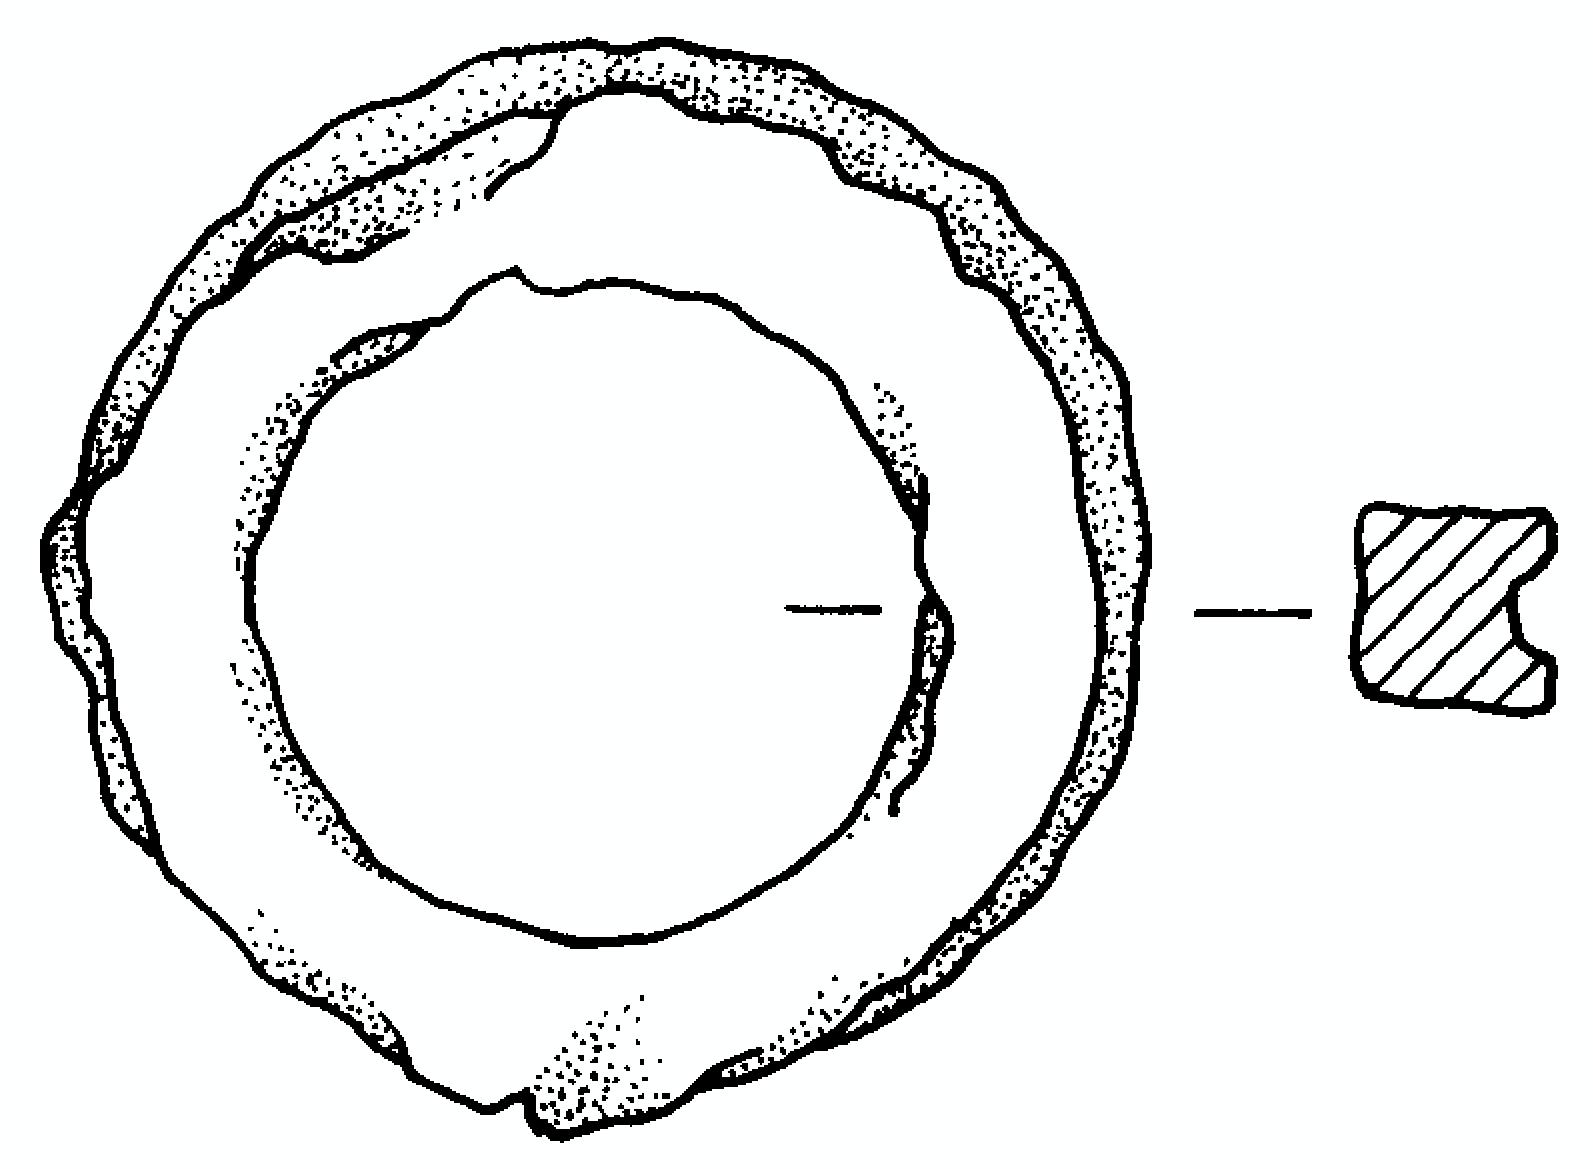 anello (fine/primo quarto IV-III a.C)